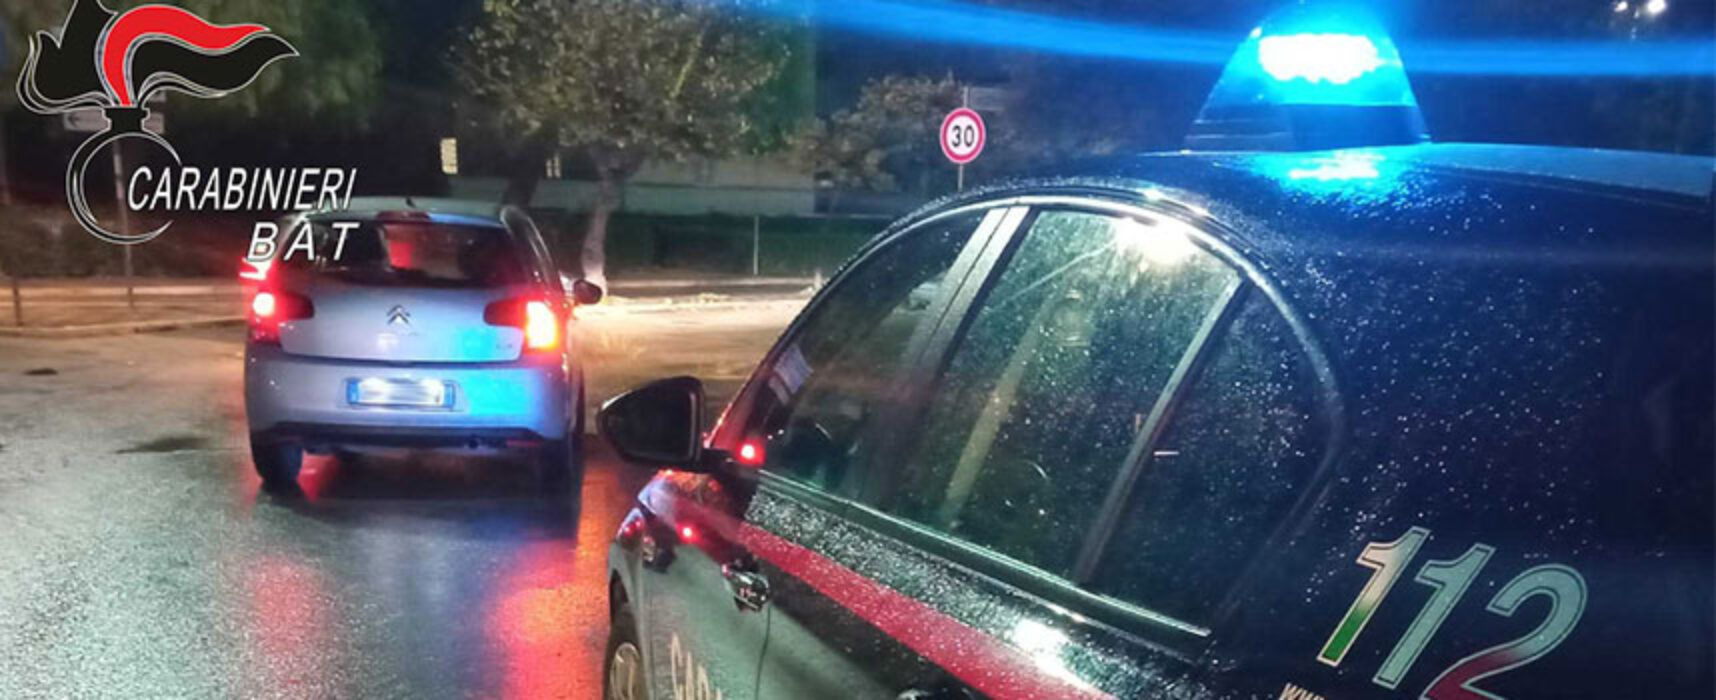 Bisceglie: Carabinieri sventano furto in centro di una auto di grossa cilindrata